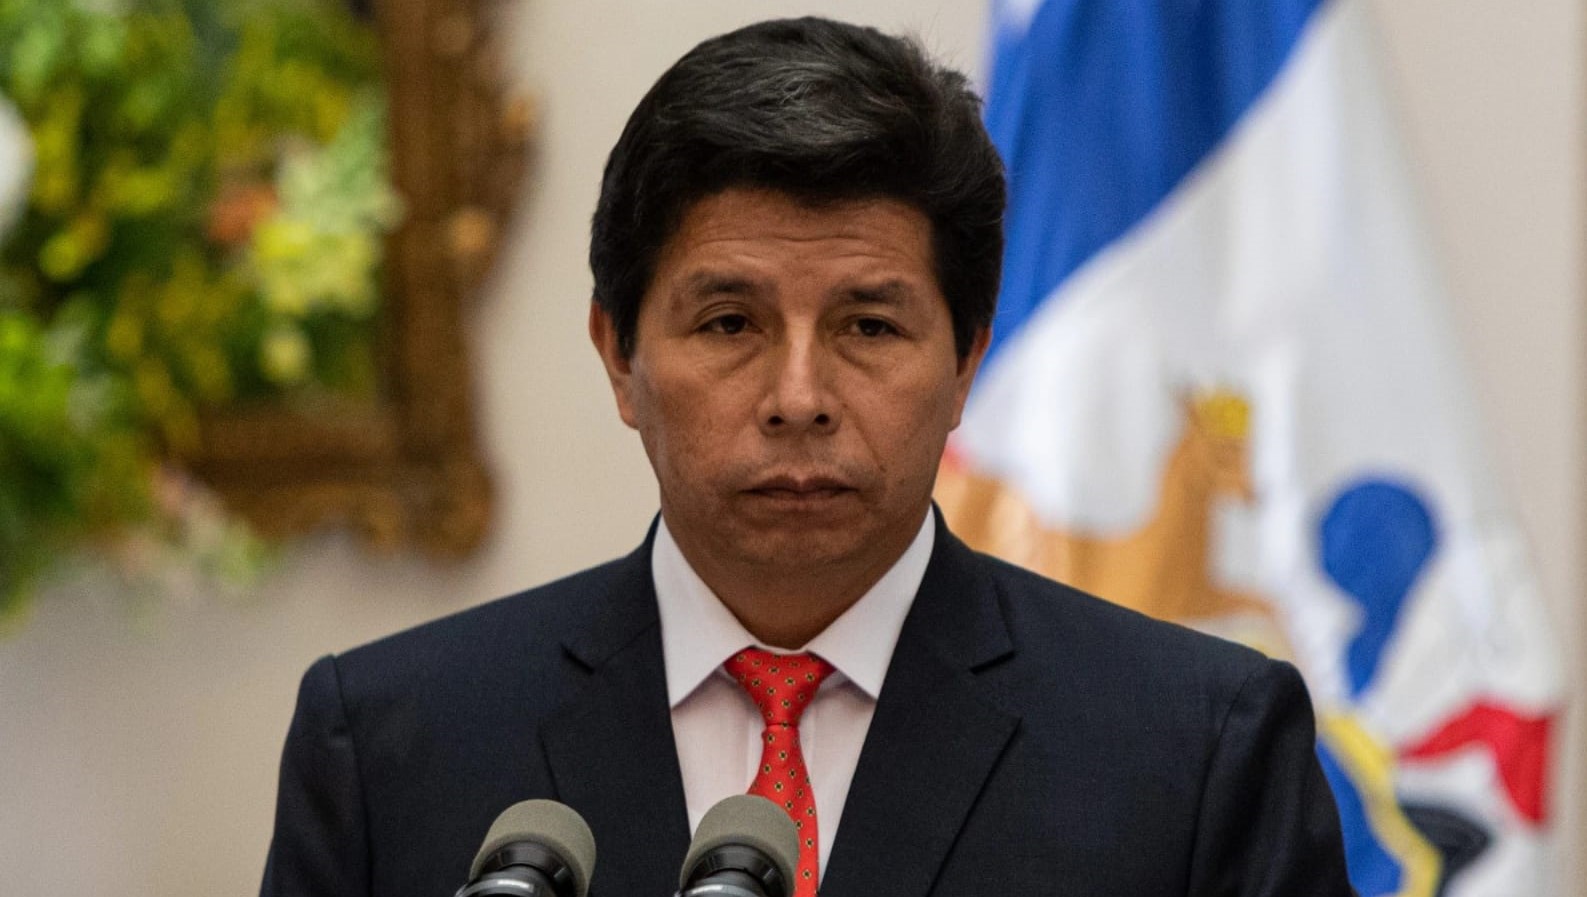 شرطة البيرو تعتقل رئيس البلاد